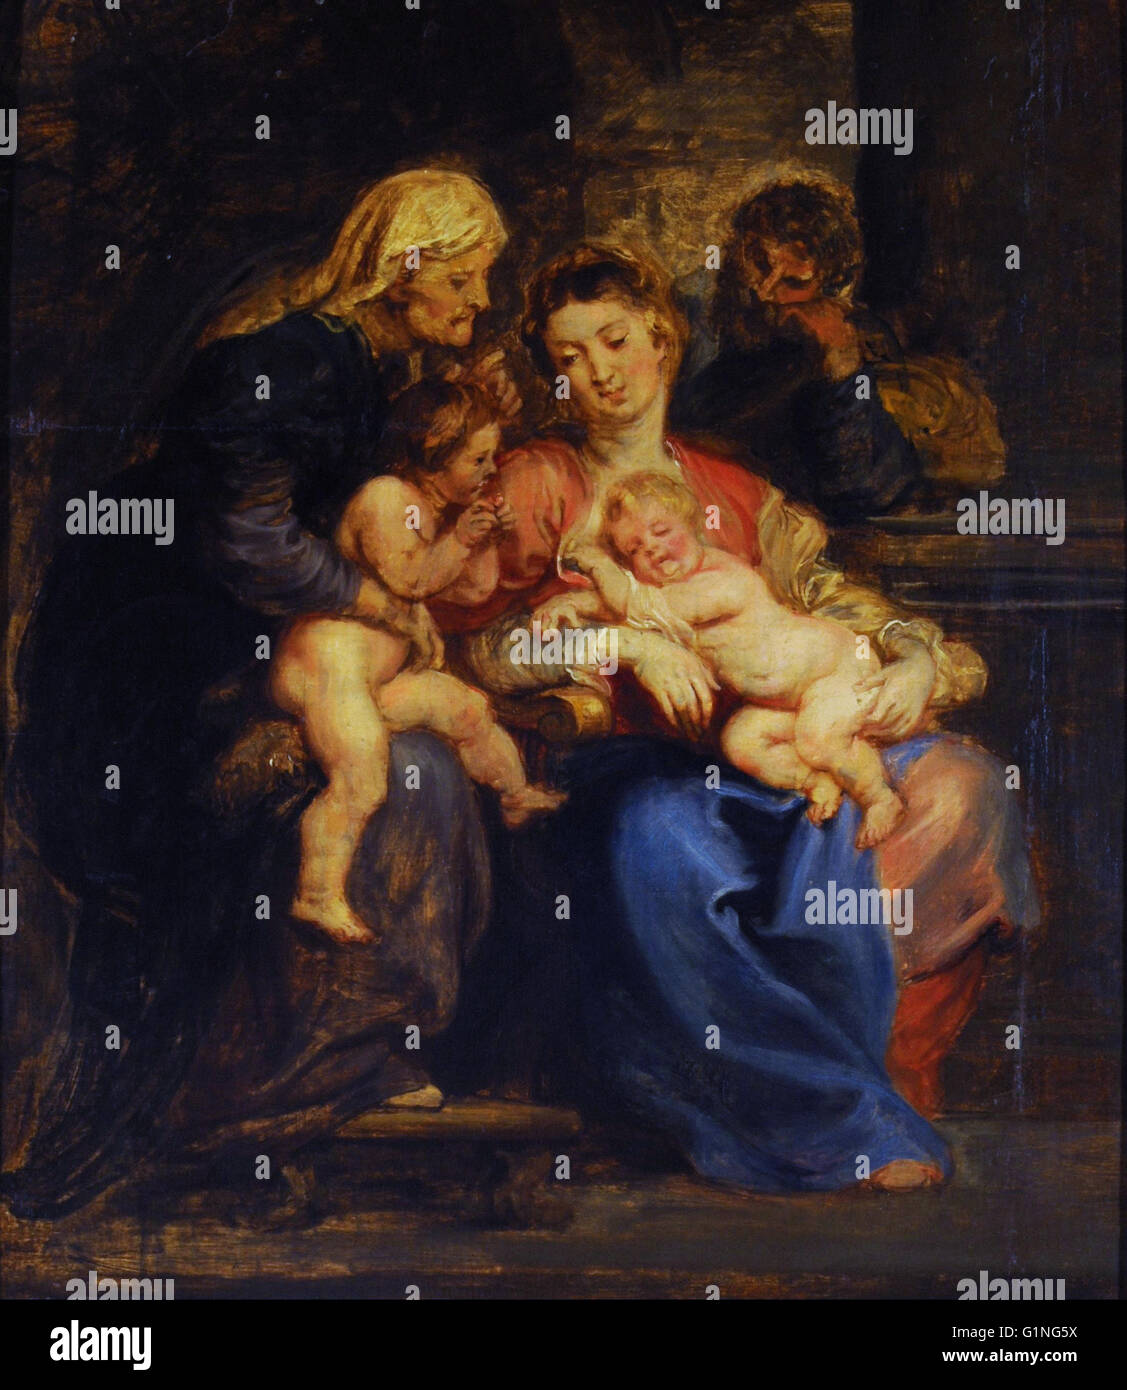 Peter Paul Rubens - La Sagrada familia con Santa Isabel y San Juan - Museo Nacional de Bellas Artes de Buenos Aires Foto Stock